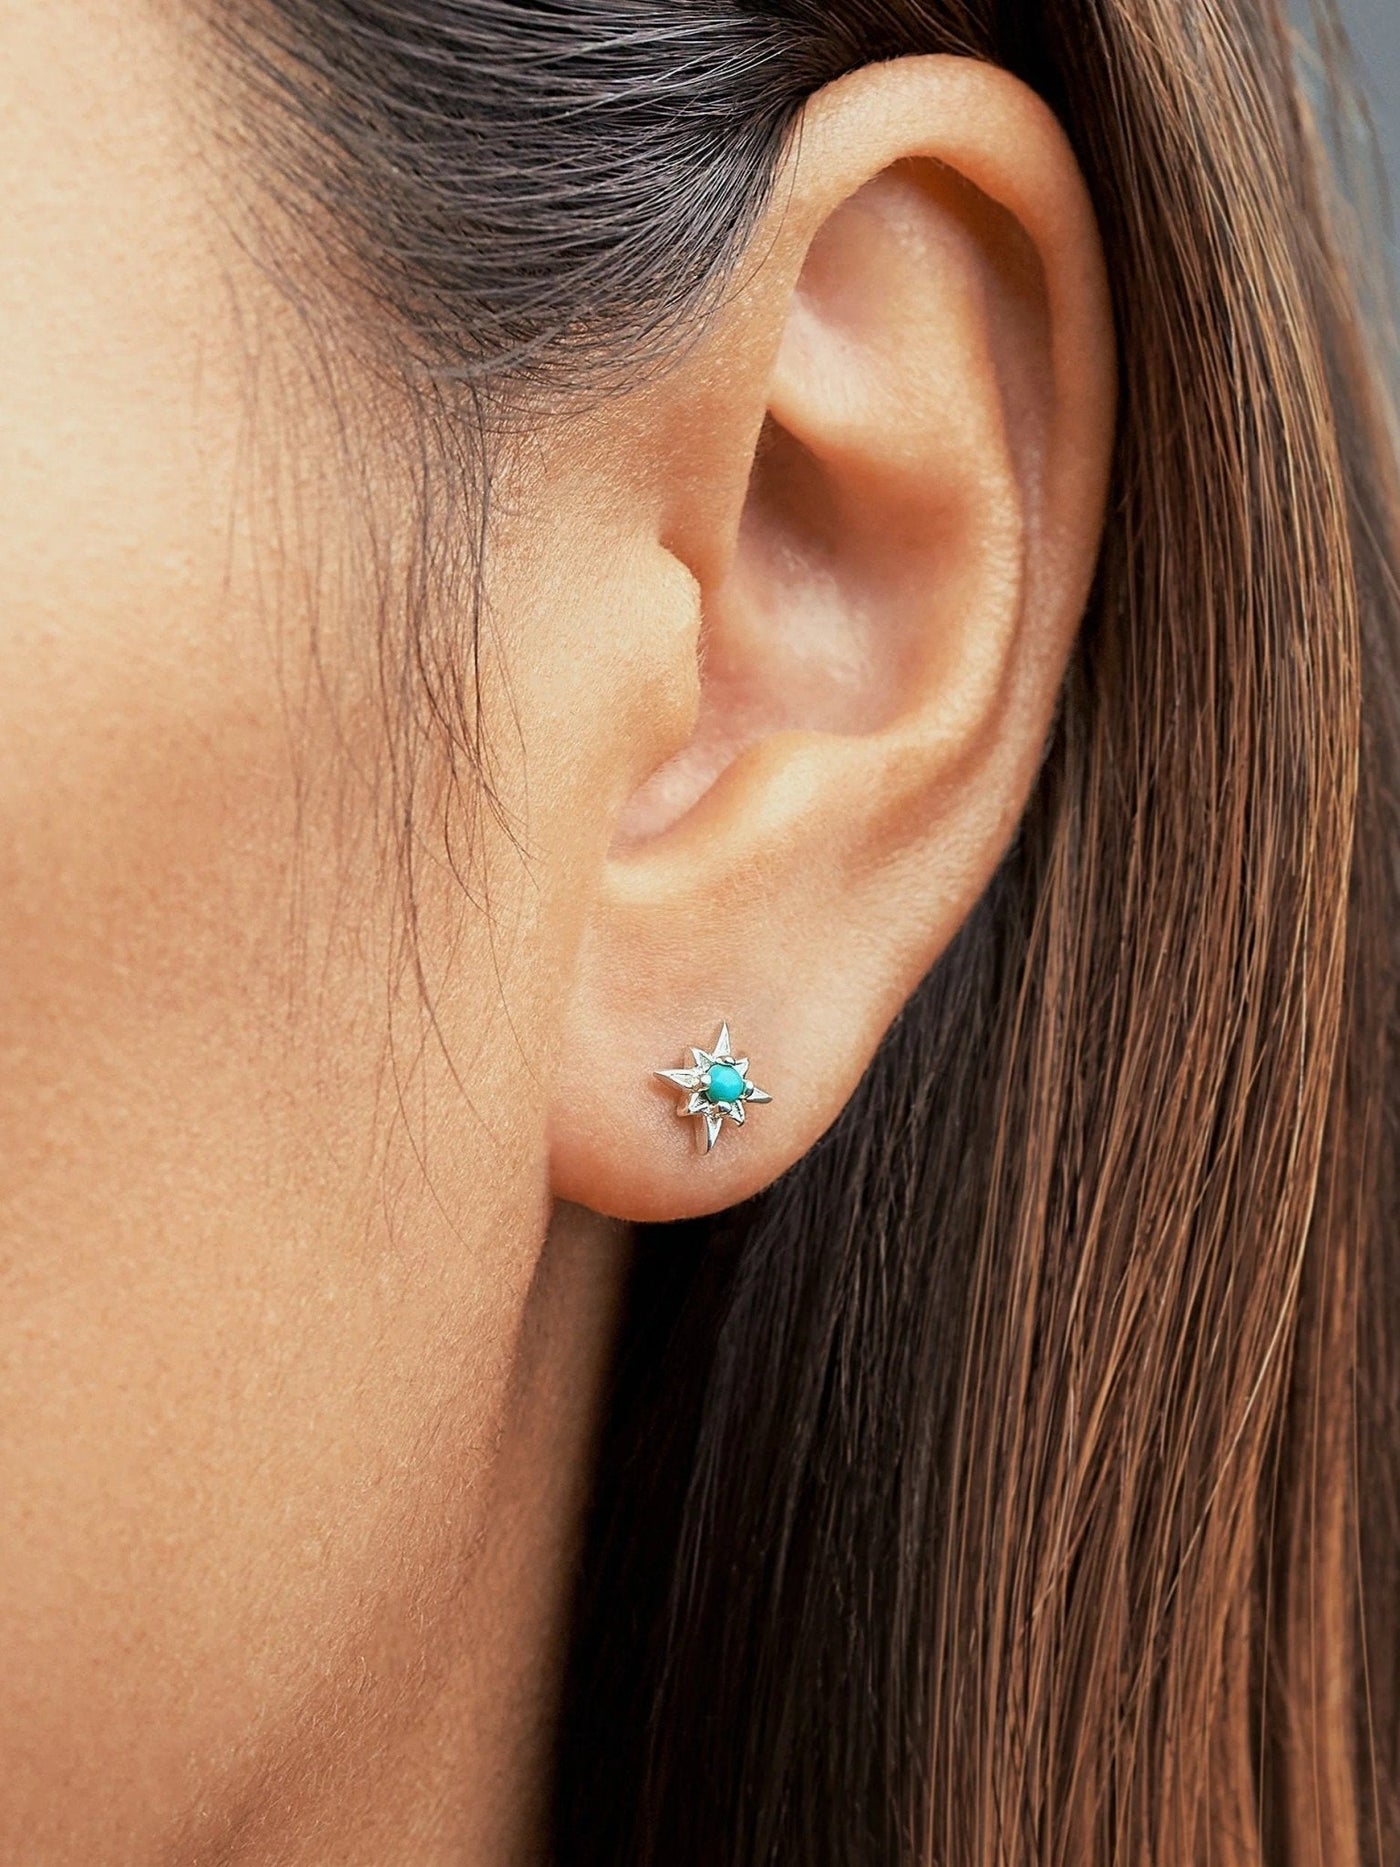 Zelma Turquoise Stud Earrings - 925 Sterling SilverBackUpItemsChain Drop EarringsLunai Jewelry